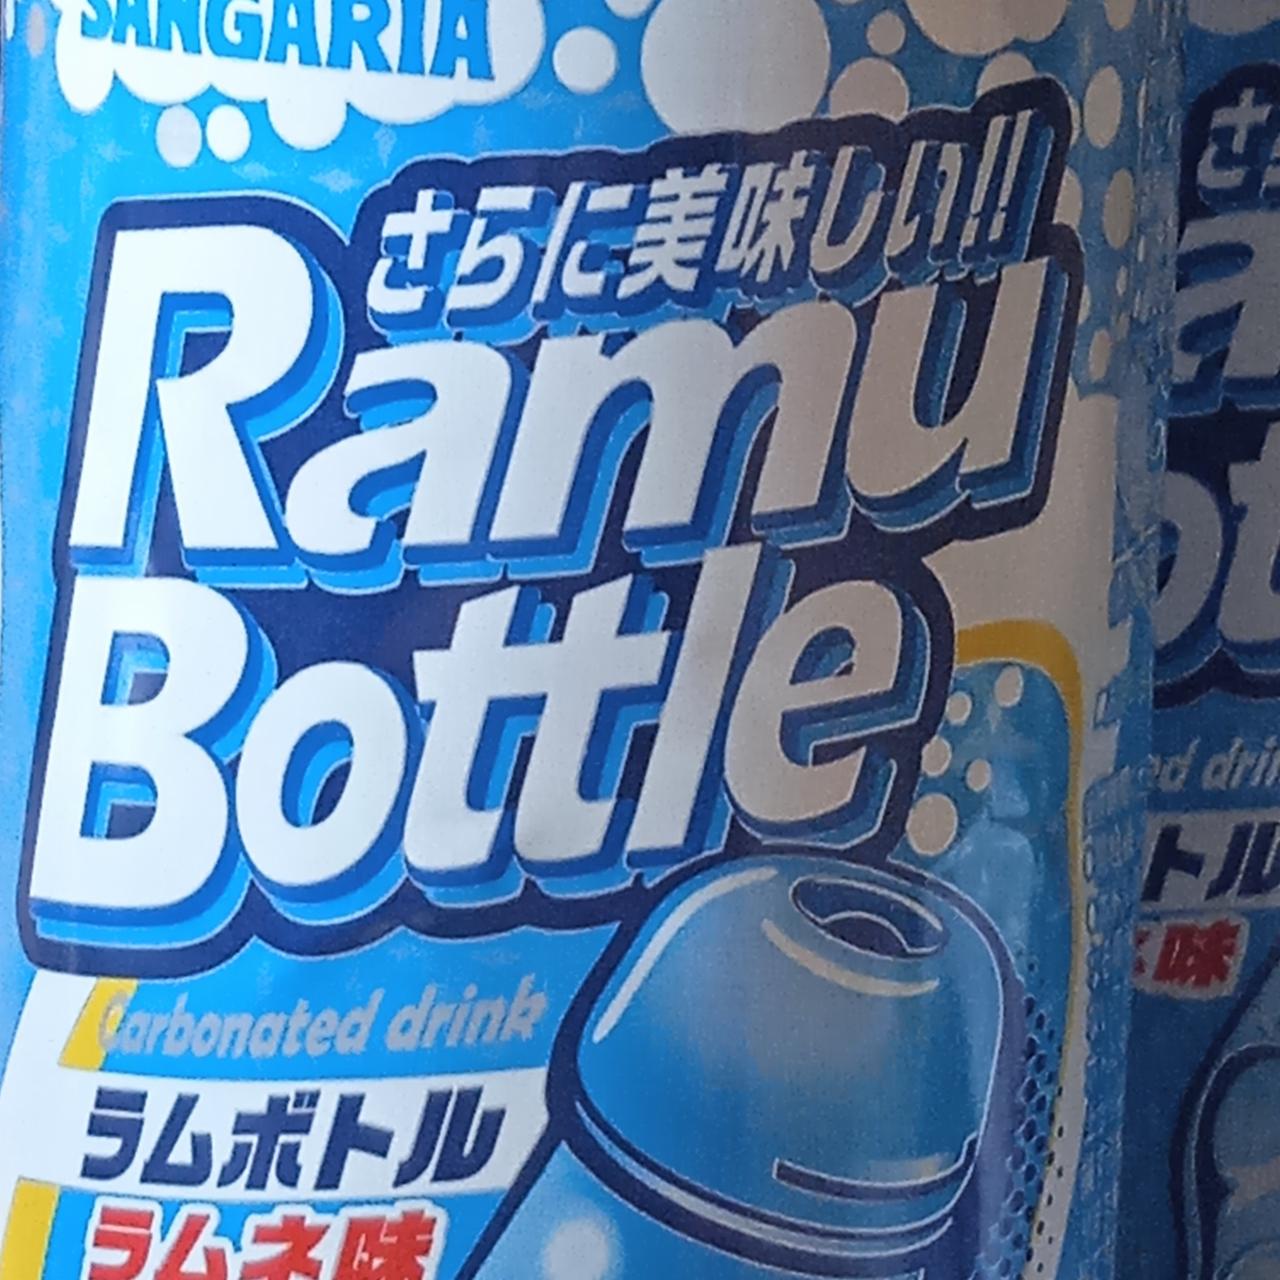 Фото - Газированный напиток Ramu Bottle (carbonated) Sangaria